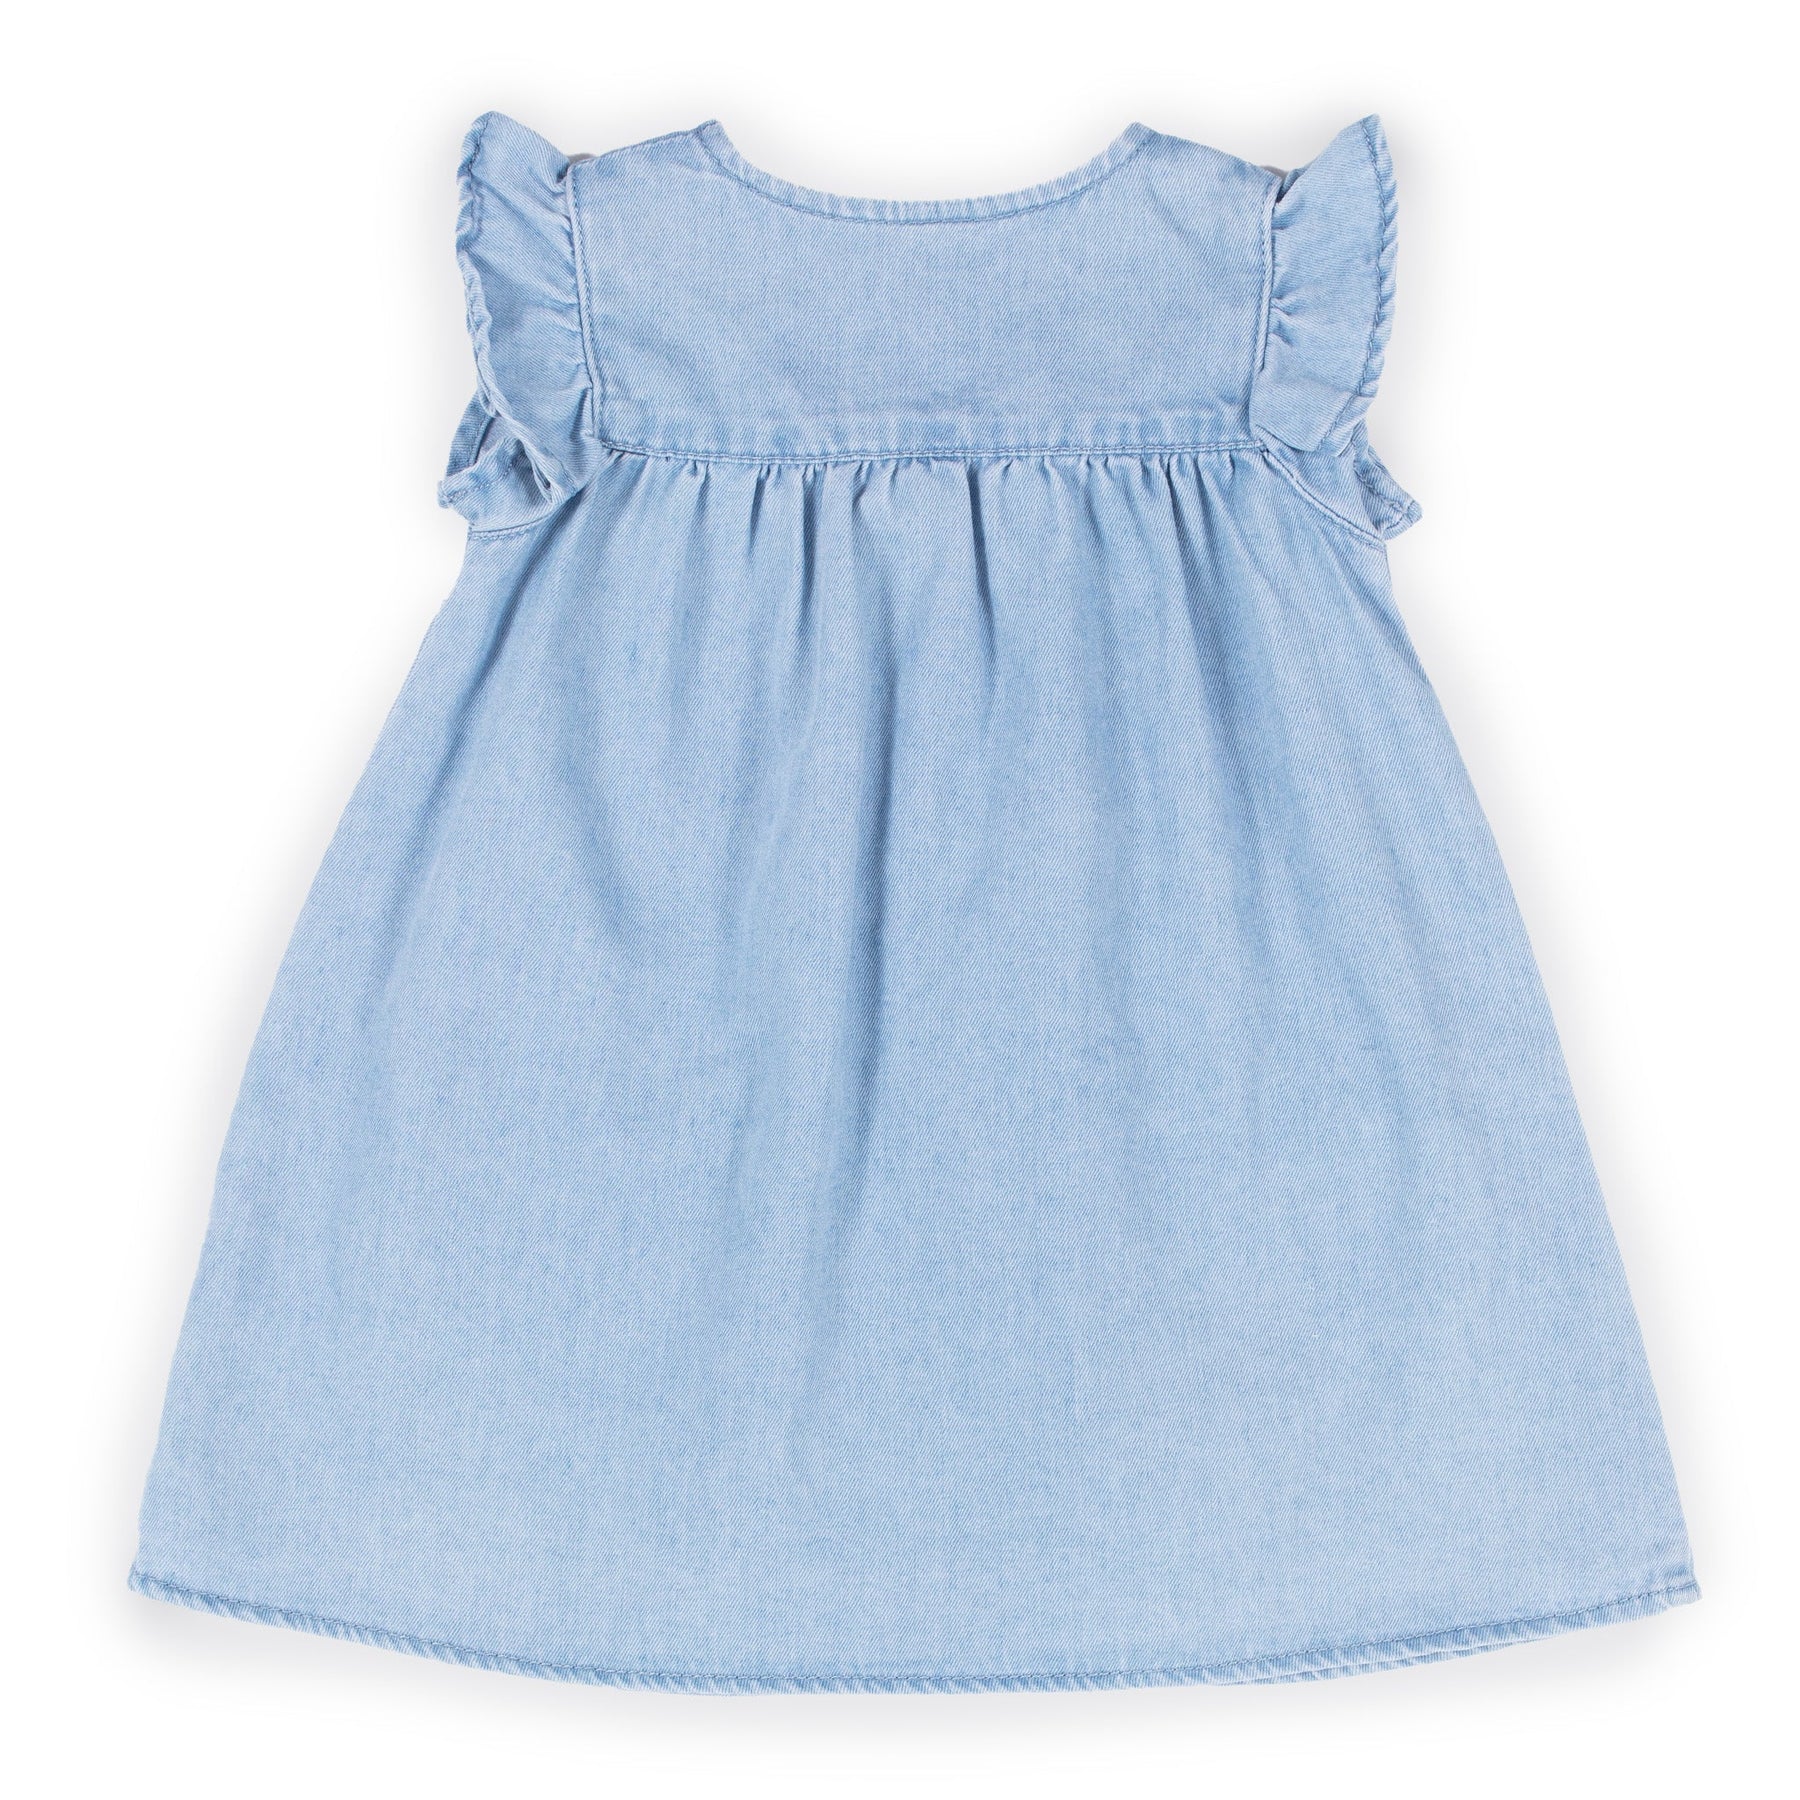 Robe pour bébé fille par Nano | S2352-05 Denim pâle | Boutique Flos, vêtements mode pour bébés et enfants